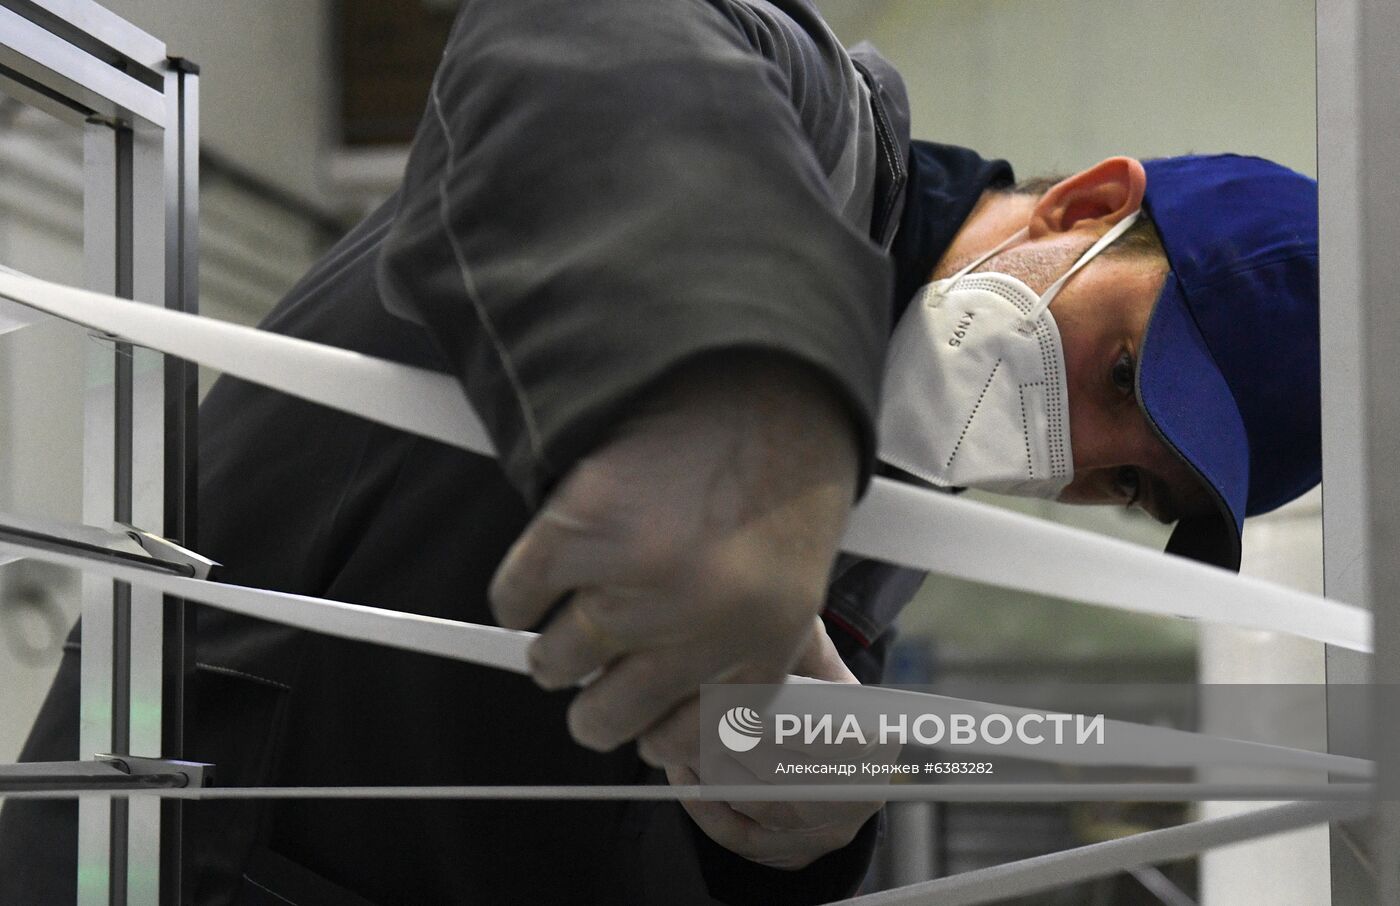 Производство медицинских масок в Новосибирке